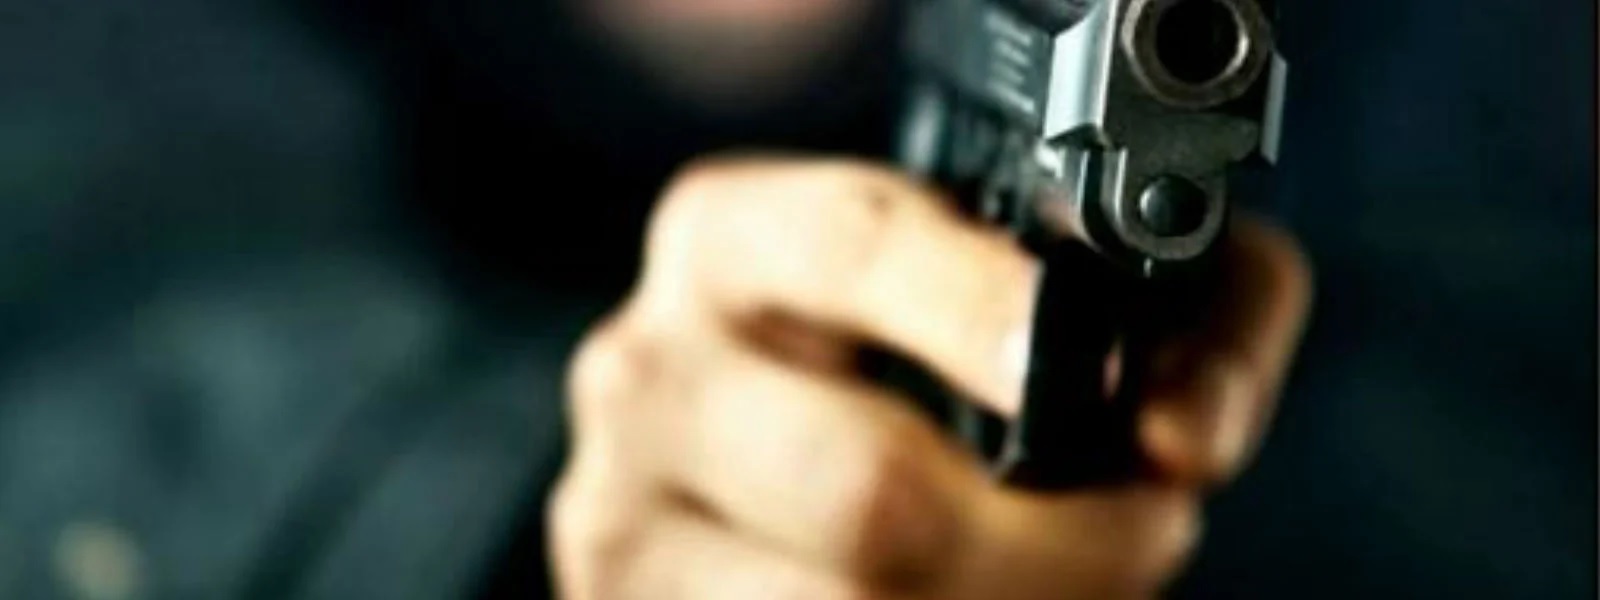 நைஜீரியாவில் மர்ம நபர்கள் நடத்திய துப்பாக்கிச்சூட்டில் 32 பேர் பலி